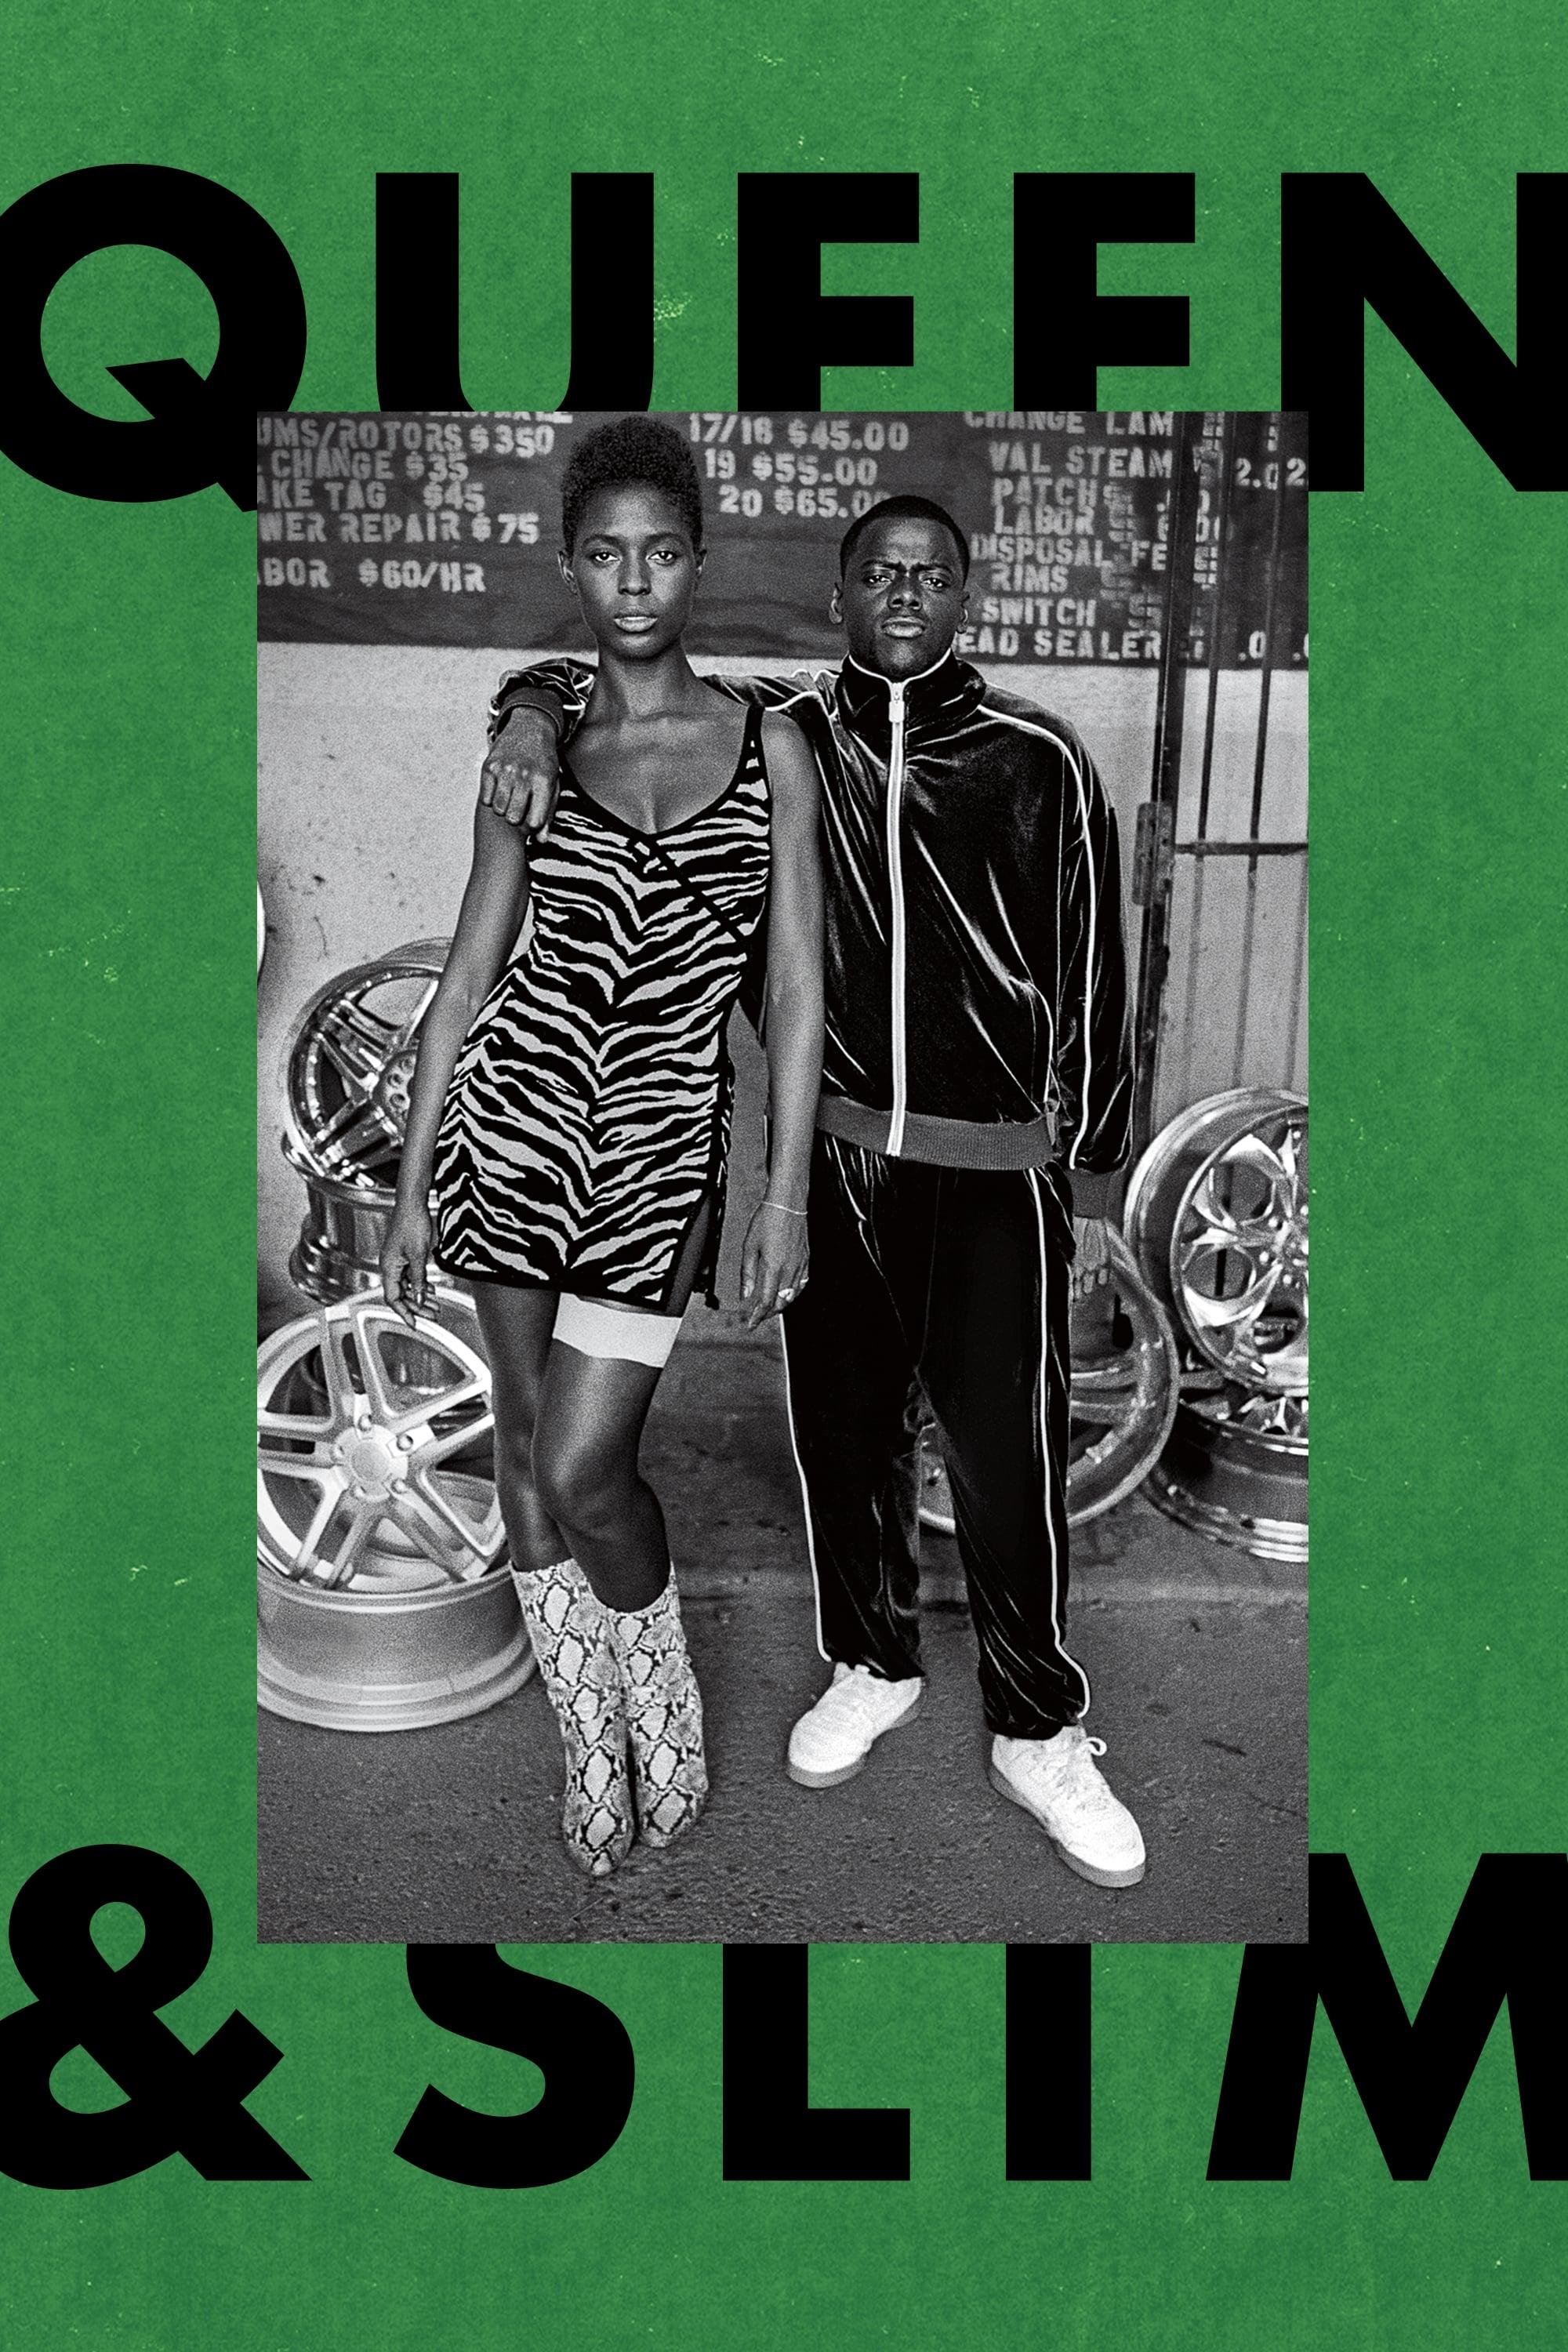 Queen & Slim poster